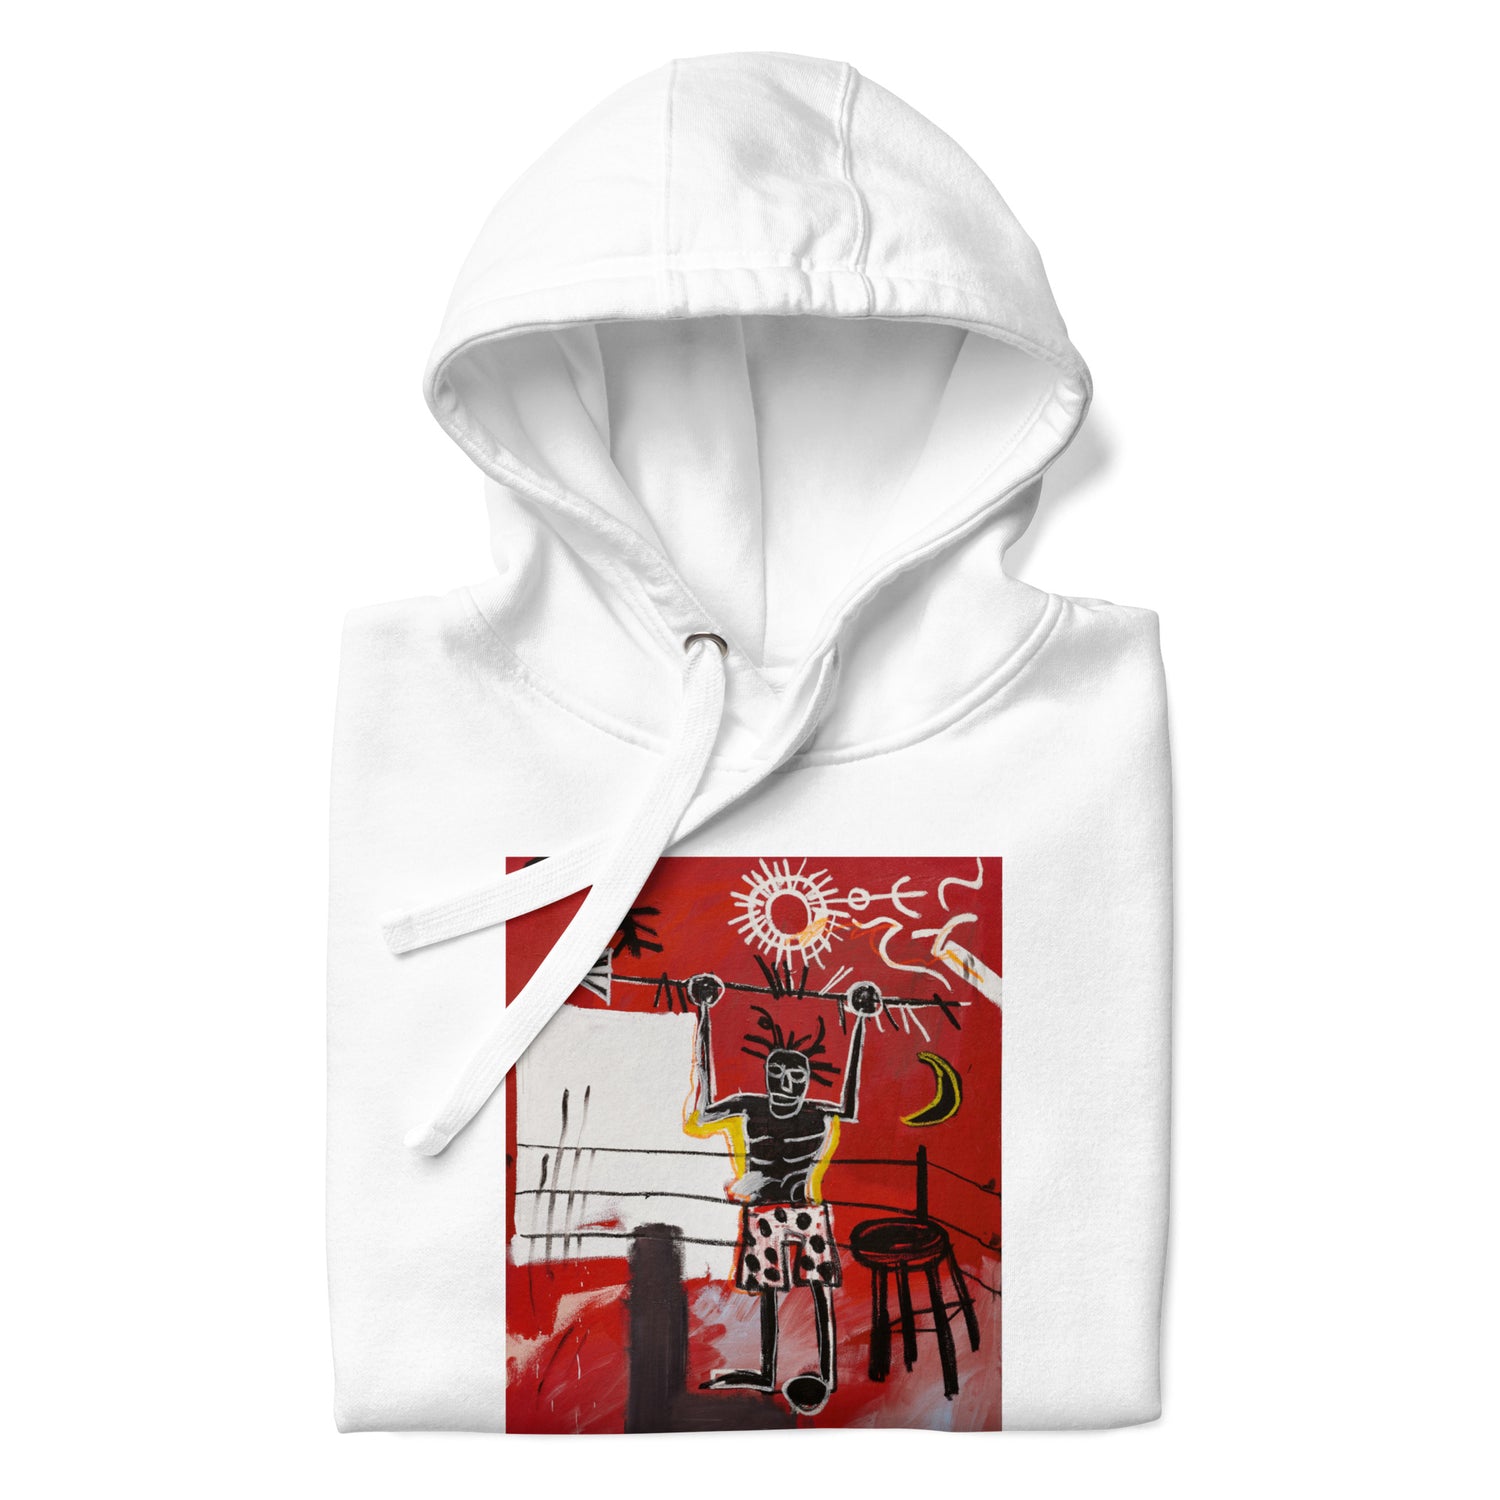 Jean-Michel Basquiat "The Ring" Artwork Printed Premium Streetwear Sweatshirt Hoodie White